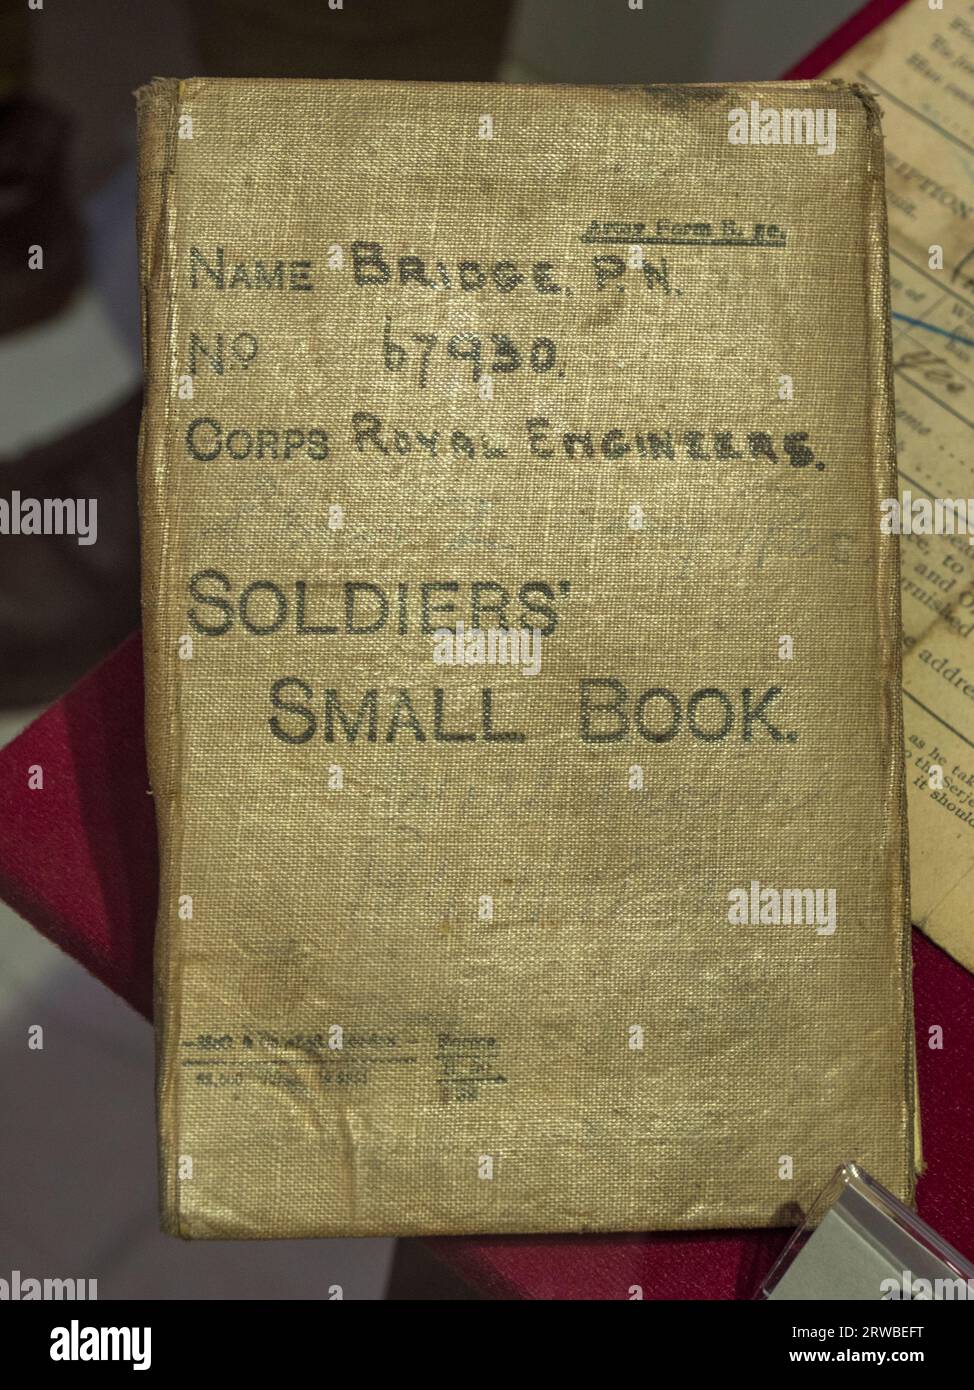 Soldiers' Small Book, utilizzato per registrare informazioni personali appartenenti al Corporal PN Bridge, Royal Engineers Museum di Gillingham, Kent, Regno Unito. Foto Stock